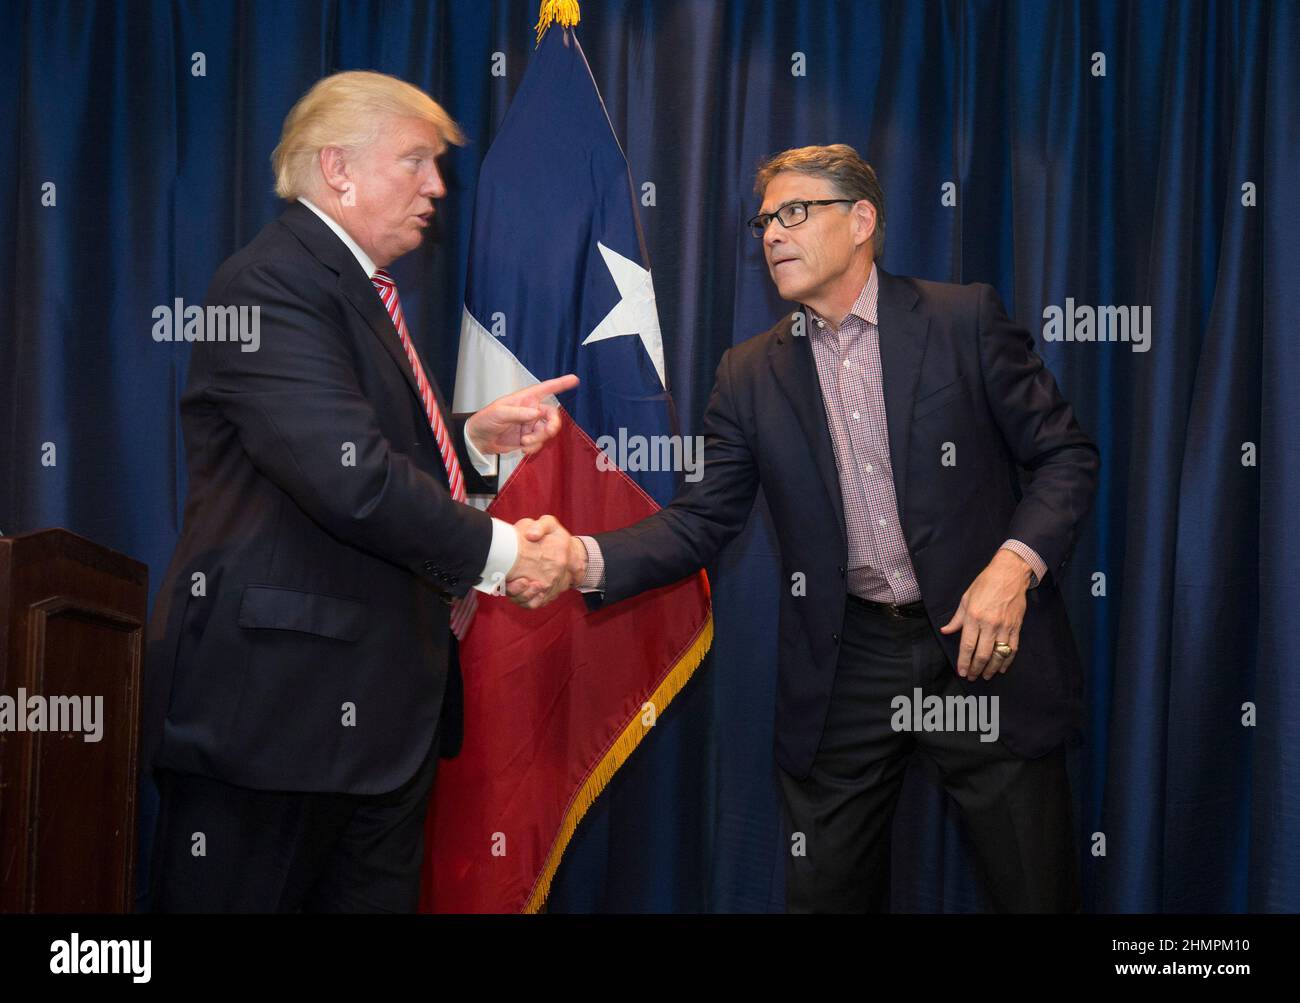 Austin, Texas 23. August 2016: Der republikanische Präsidentschaftskandidat DONALD TRUMP schüttelt die Hände mit dem ehemaligen Gouverneur RICK PERRY, als er seine unkonventionelle Kampagne nach Texas bringt, mit einem Swing durch größtenteils demokratisches Zentral-Texas mit Spendenaufenthalten und einer Kundgebung. Stockfoto